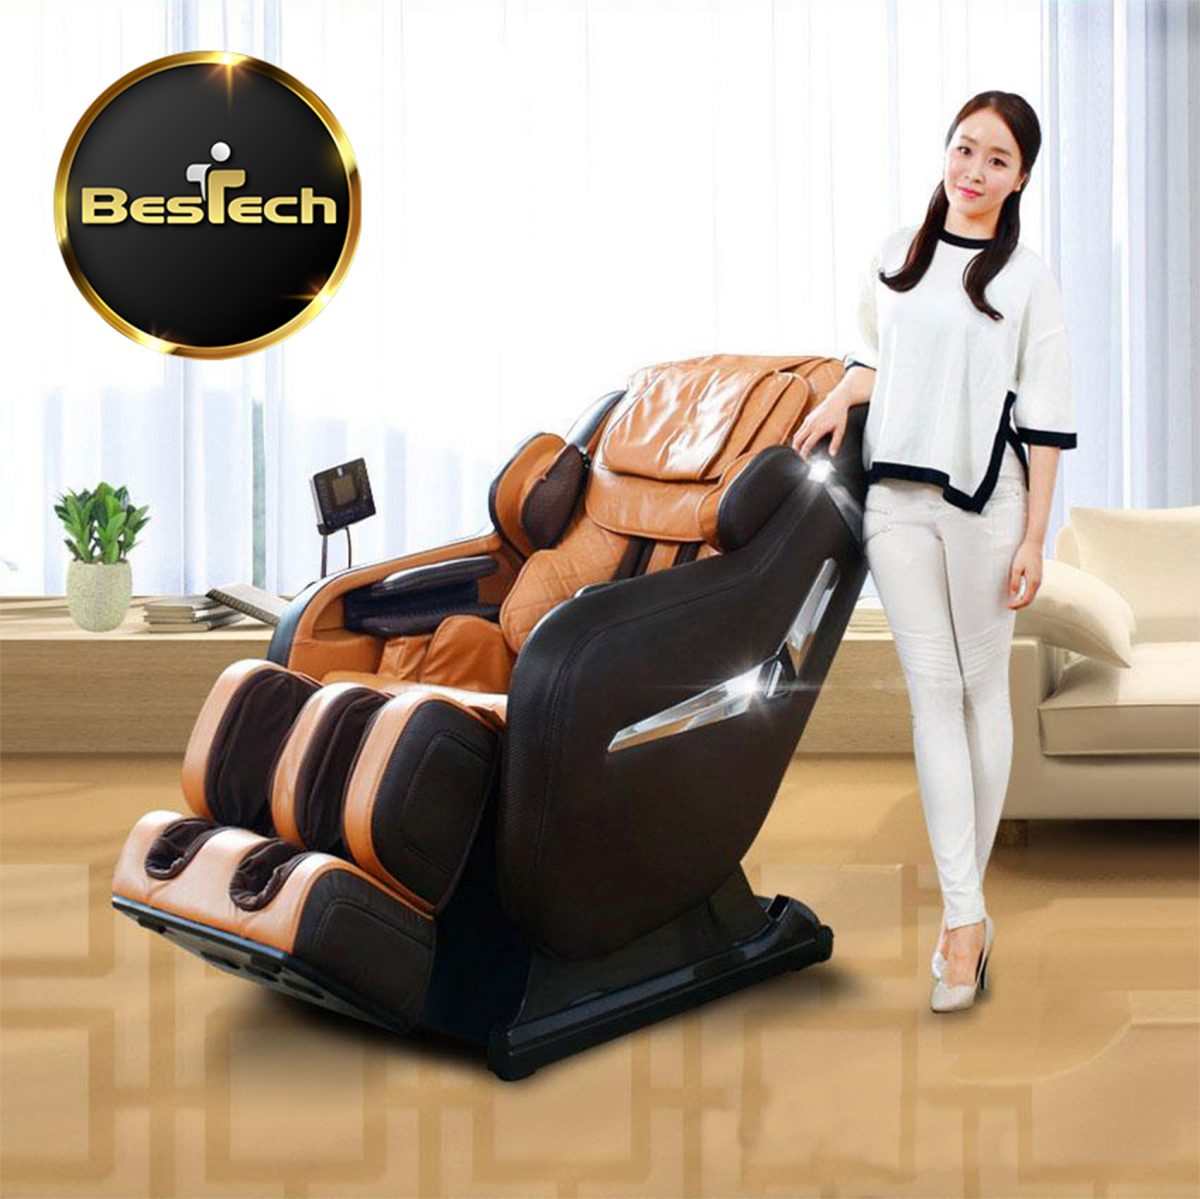 Review ghế massage bestech - ghế massage Nhật Bản cao cấp